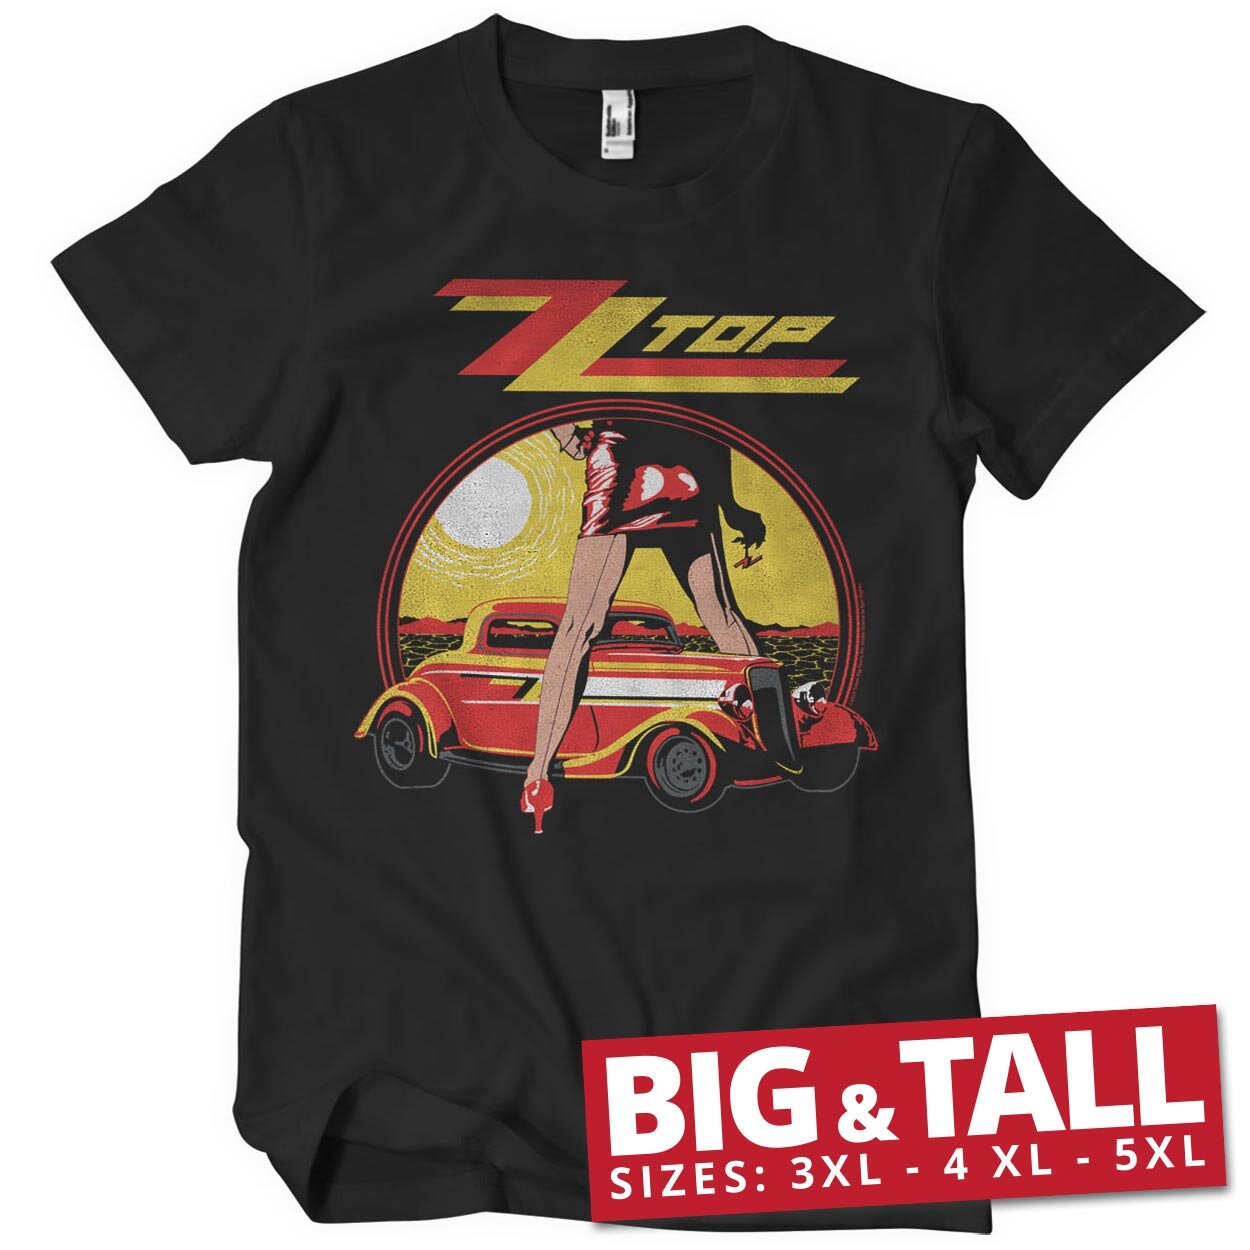 ZZ Top - Hot Legs Big & Tall T-Shirt